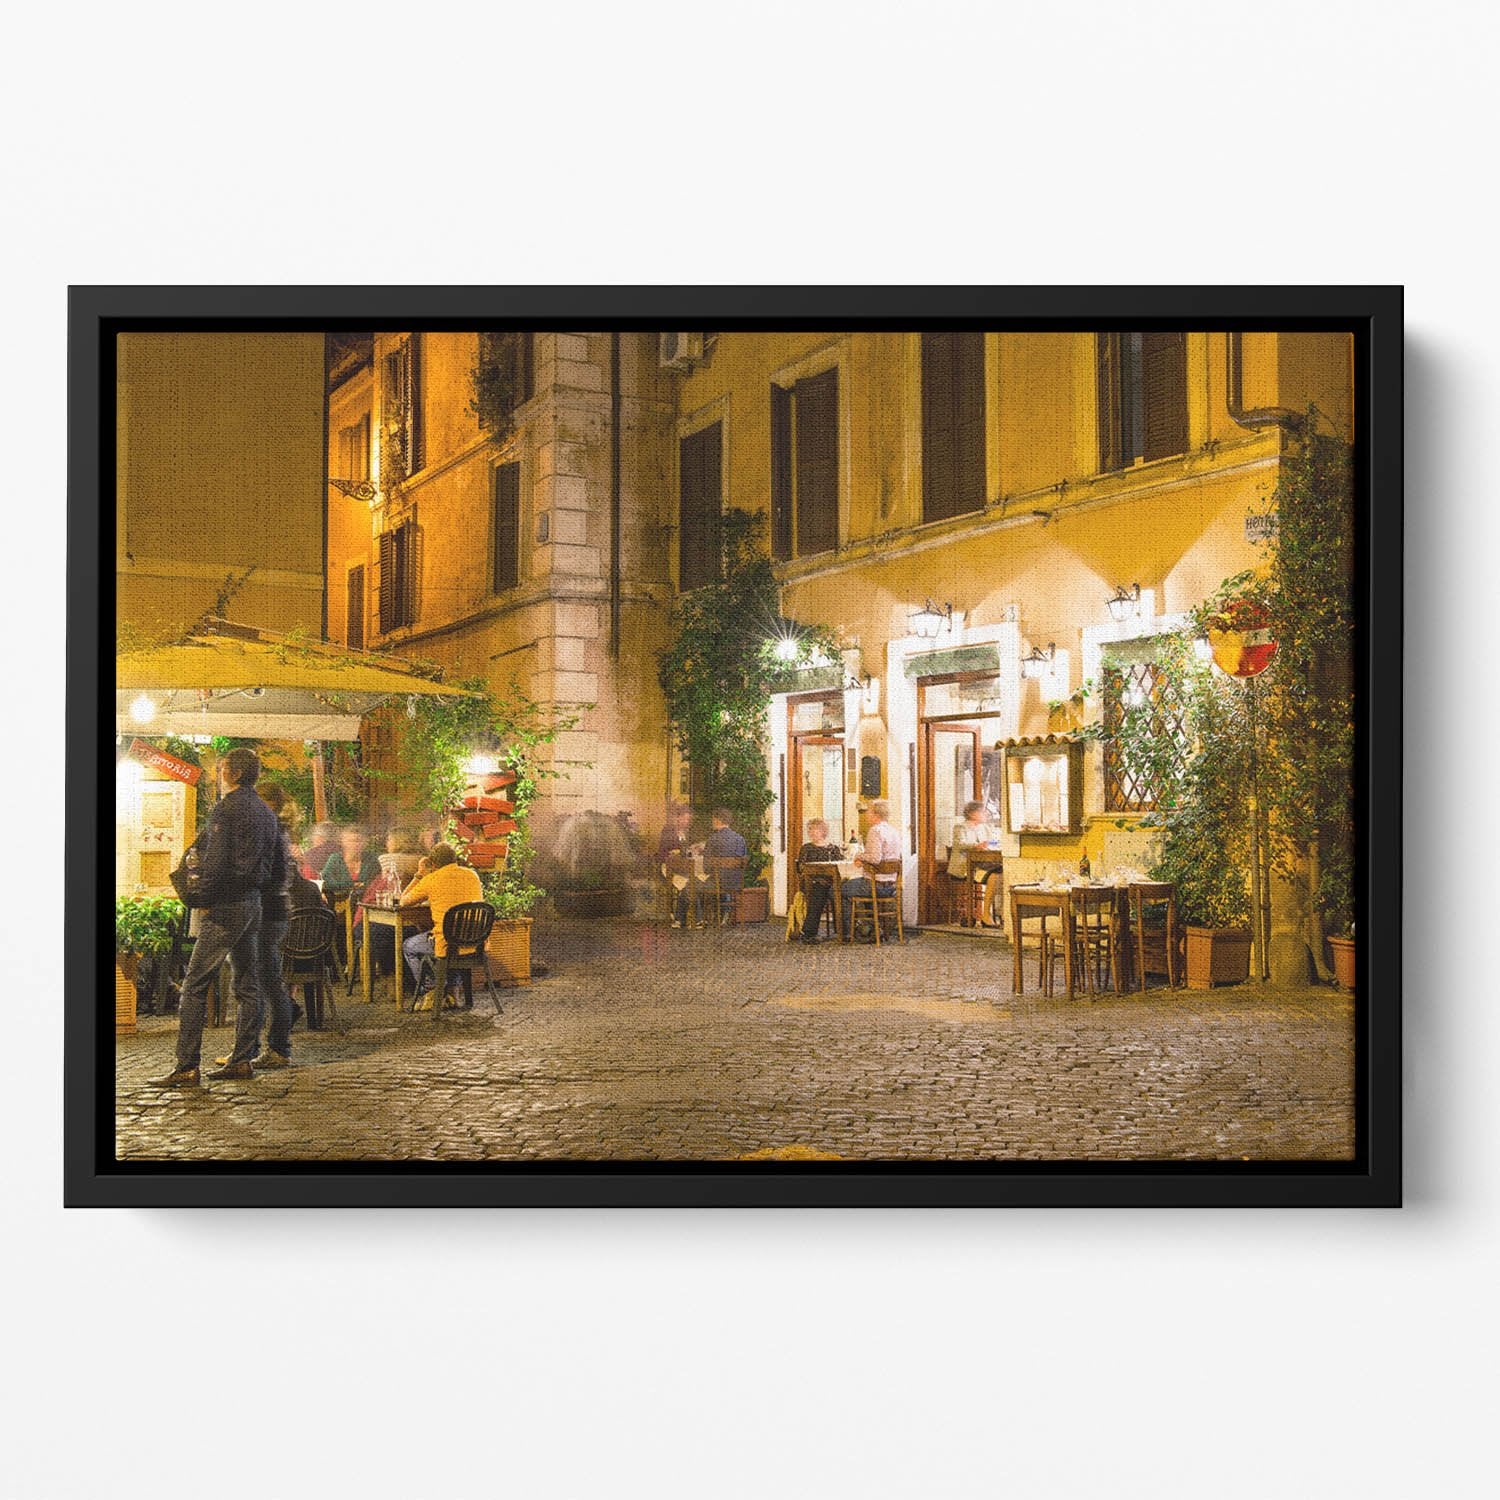 Old street in Trastevere Floating Framed Canvas